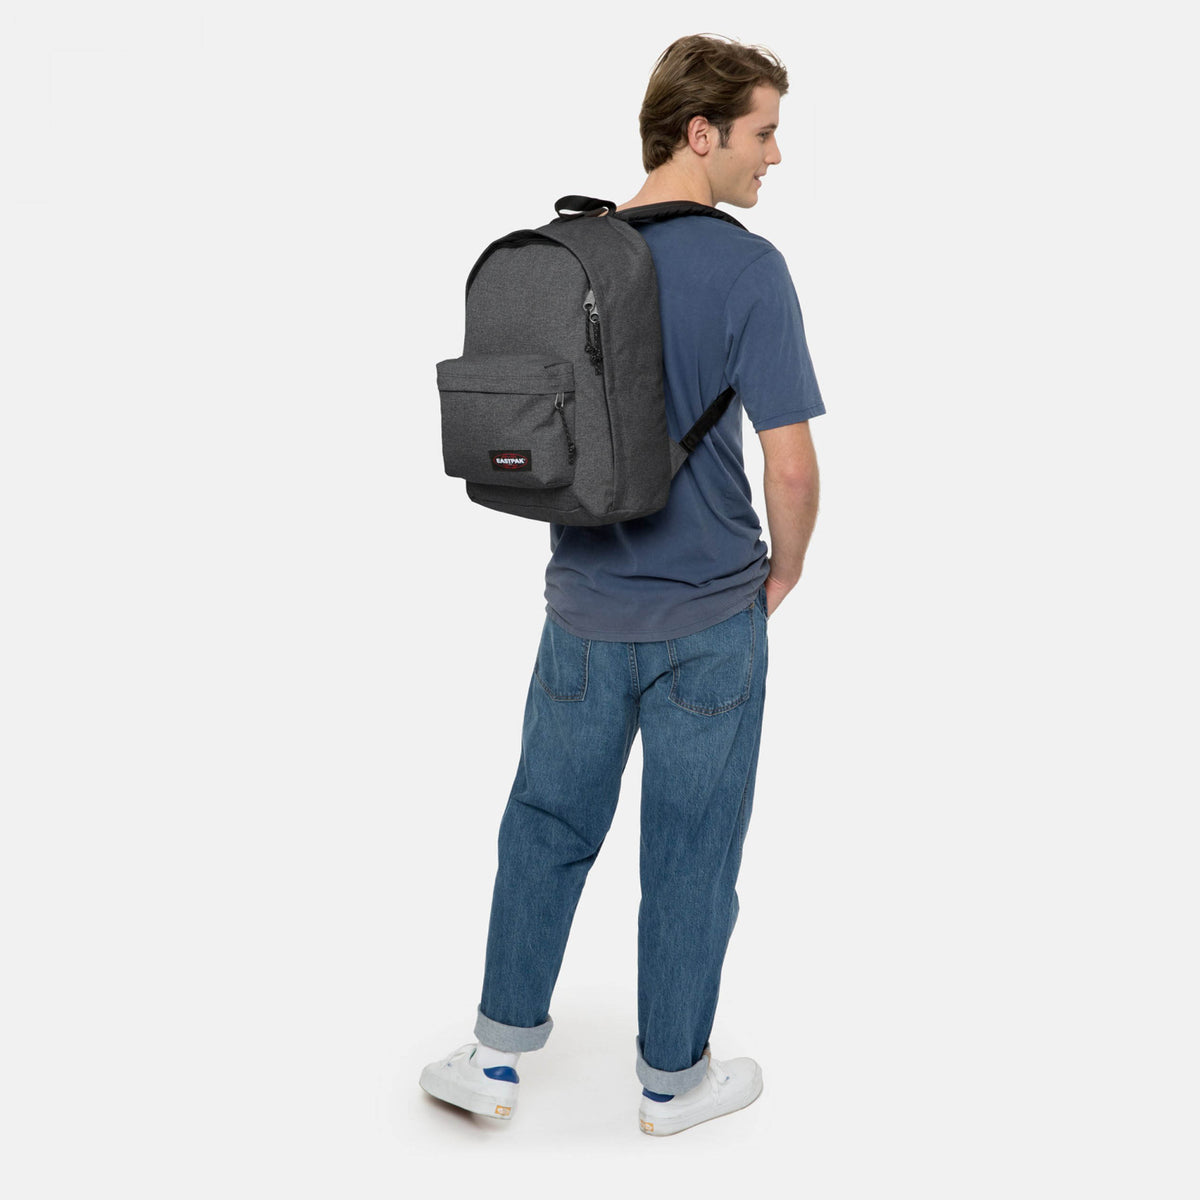 Eastpak Out Of Office Backpack - Black Denim